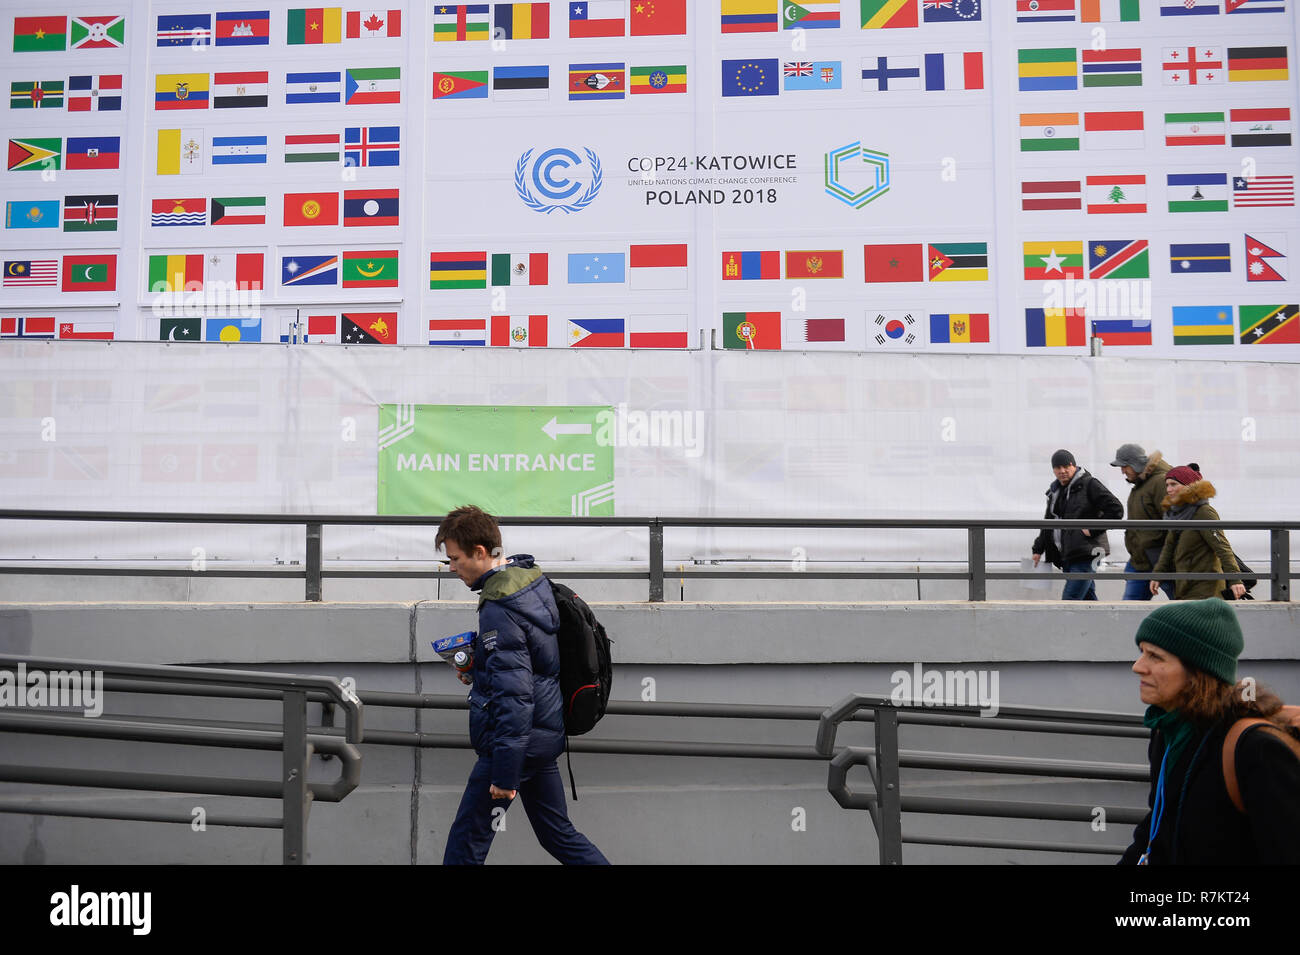 Vu les gens passant par la CDP24 drapeaux membres pendant la conférence des Nations Unies sur les changements climatiques (COP24). 2018 La conférence des Nations Unies sur les changements climatiques (COP24) est maintenant dans la deuxième semaine de négociations et se termine le 14 décembre à Katowice. Banque D'Images